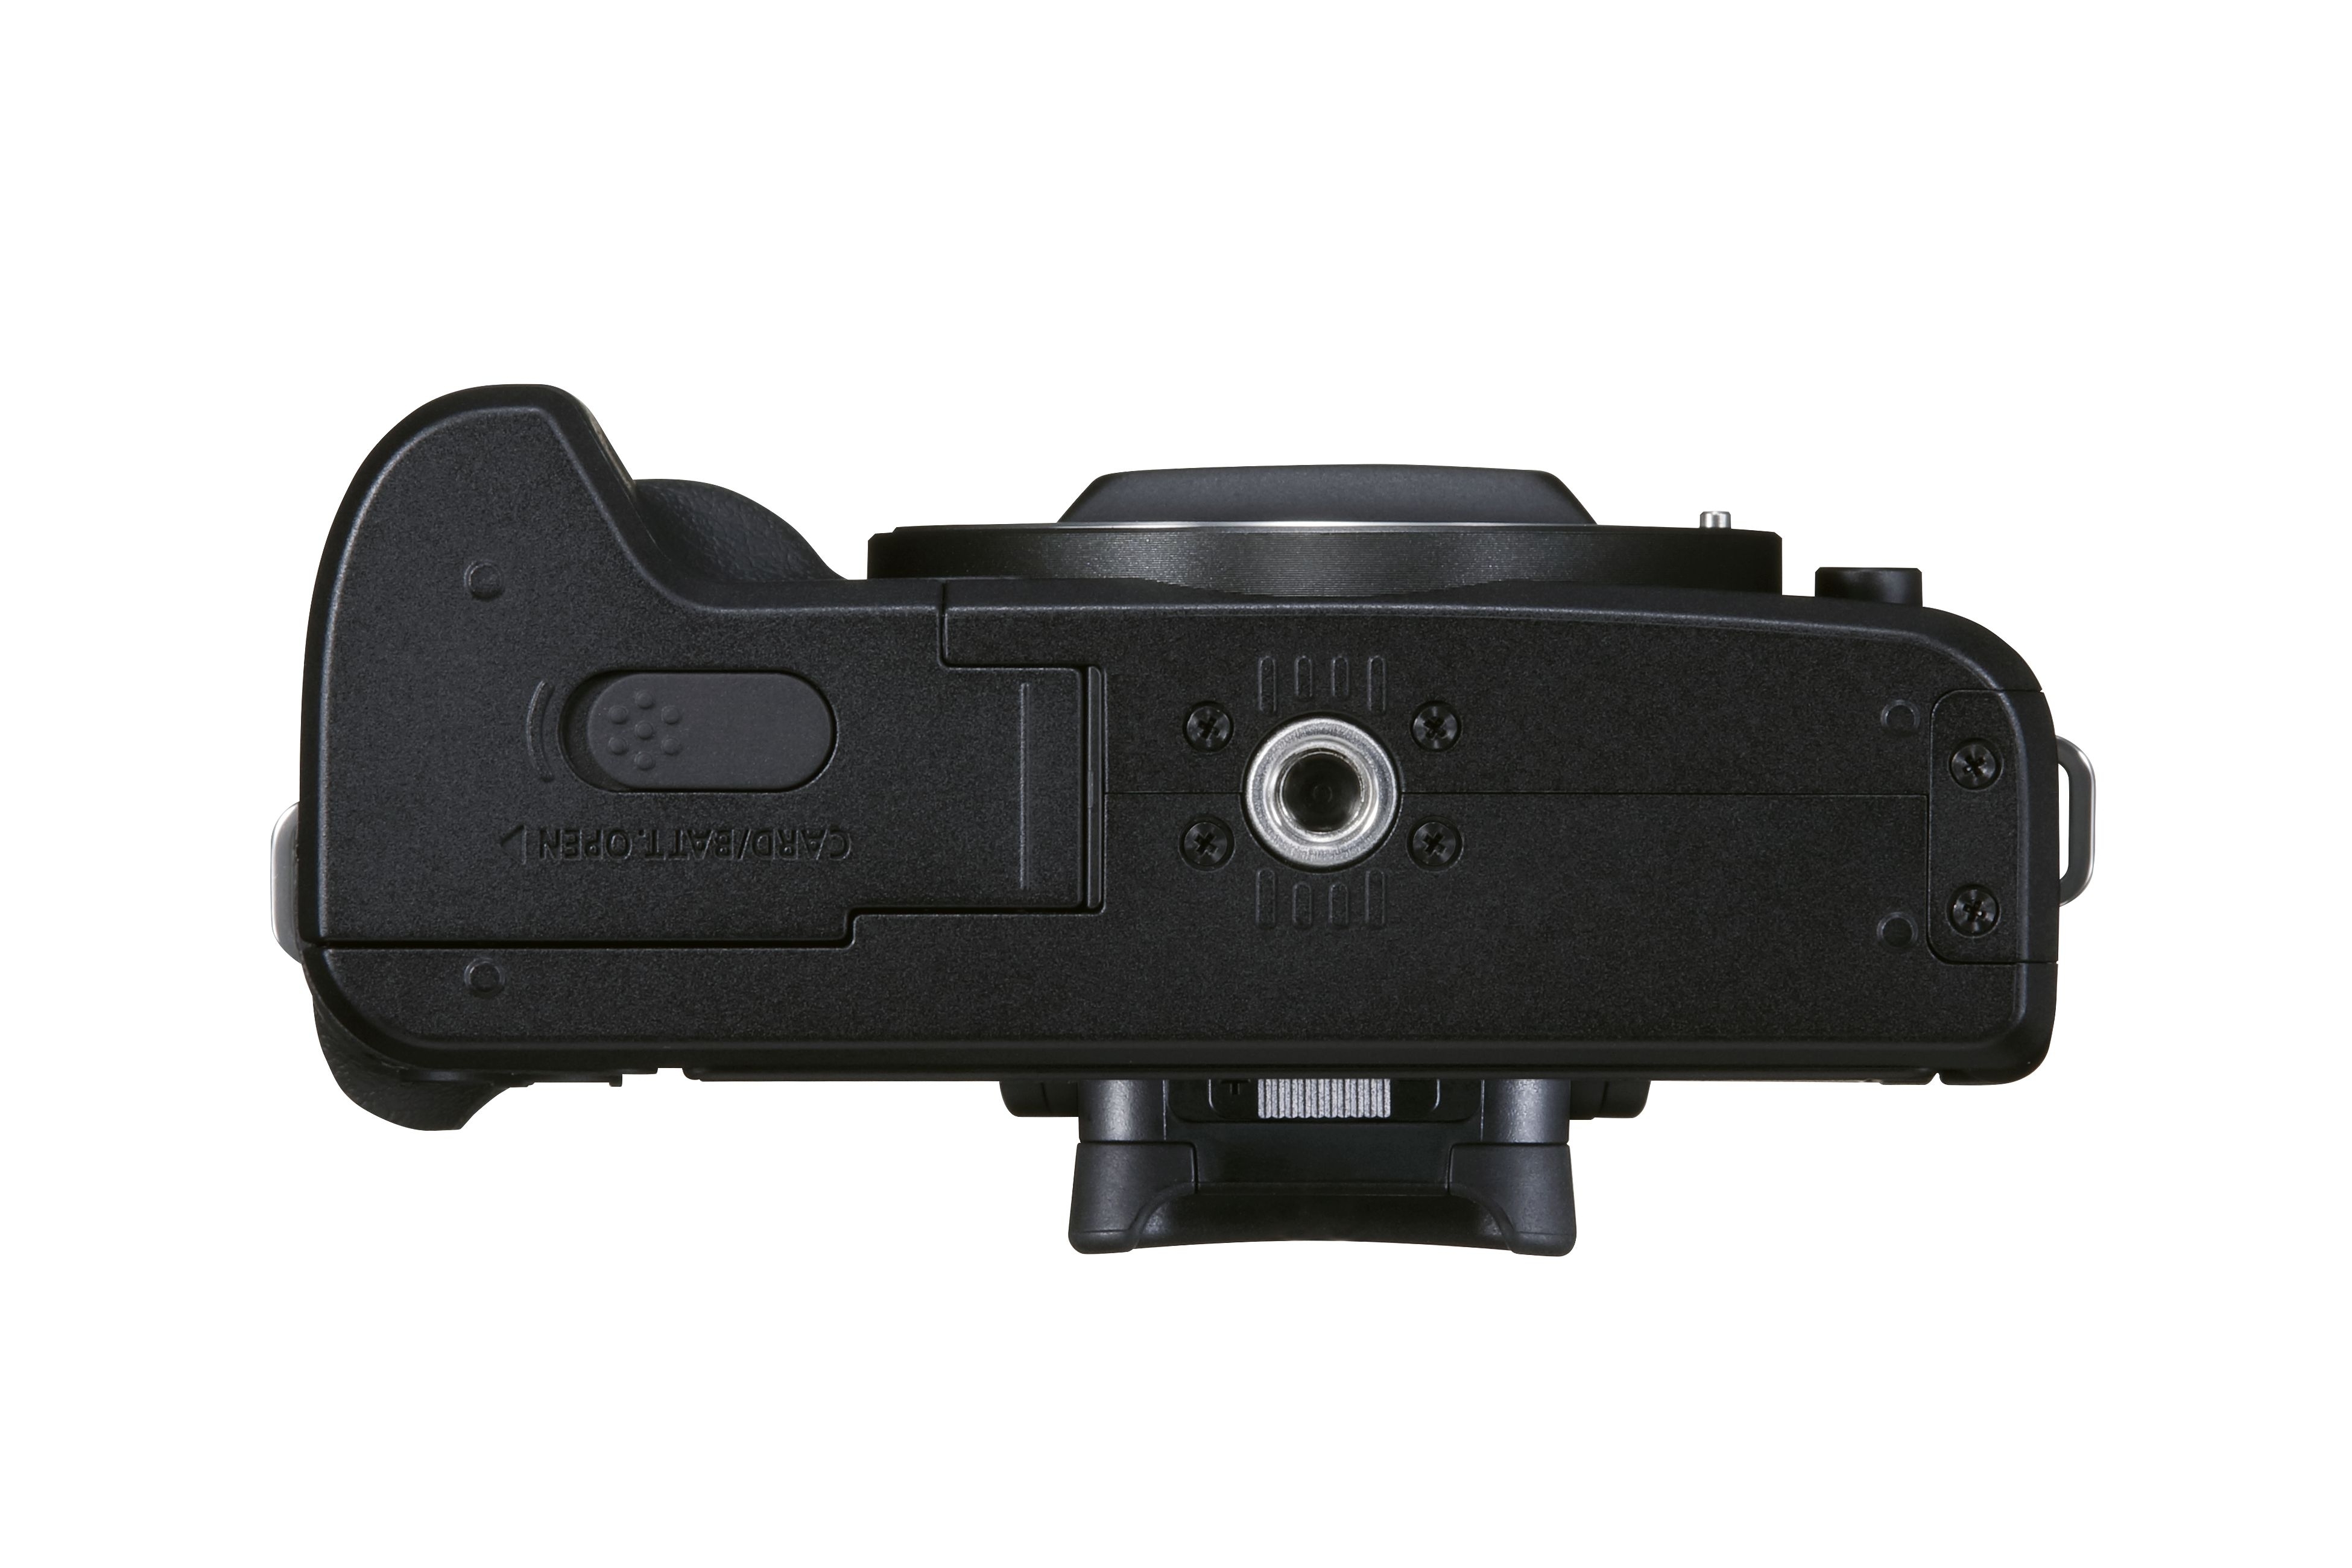 Canon EOS M50 II Gehäuse schwarz